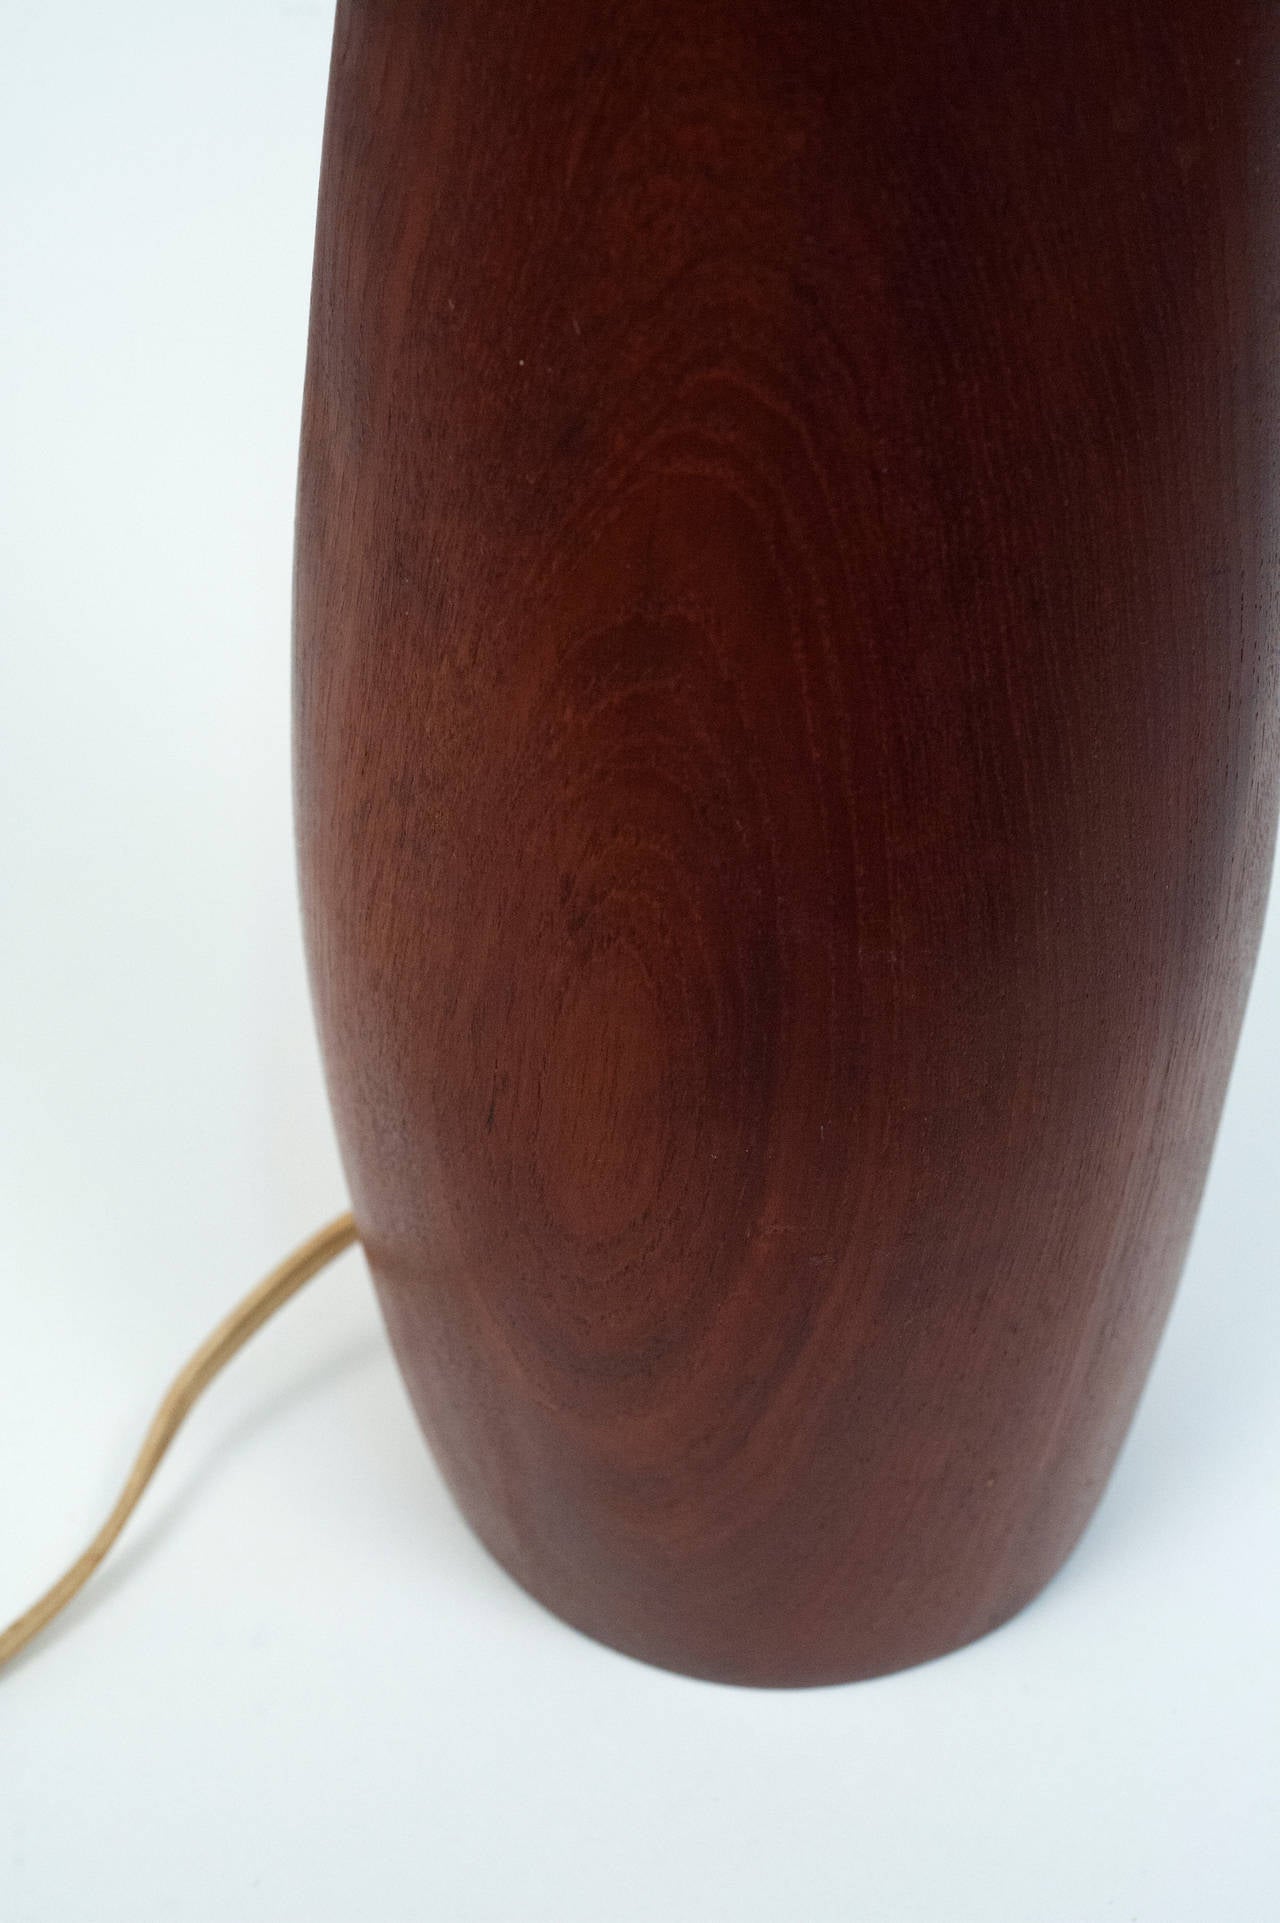 Ernst Henriksen Solid Teak Table Lamp with Original Shade 1